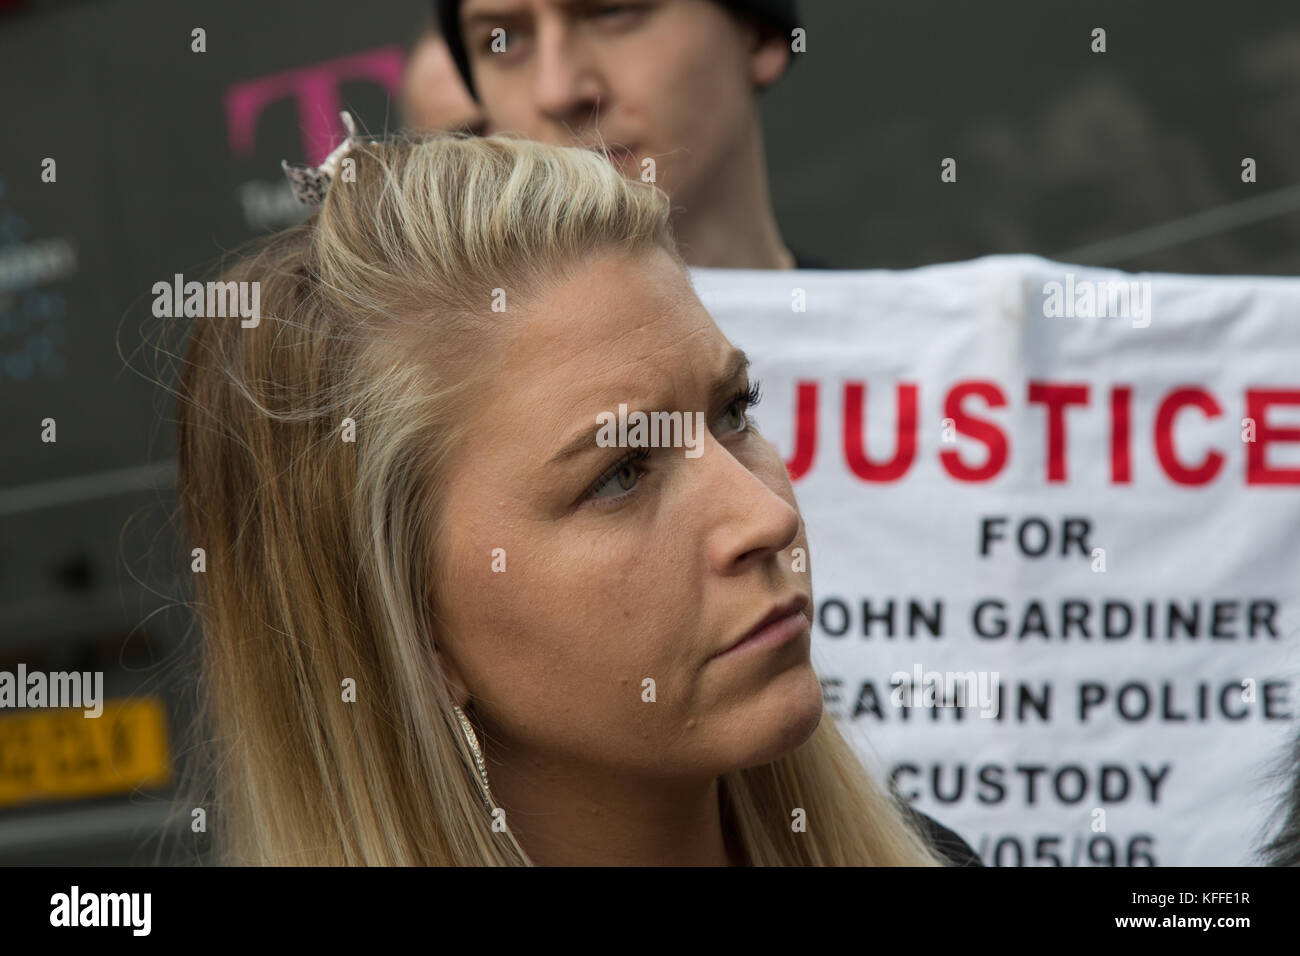 Londra, Regno Unito. 28 ott 2017. Londra, UK 28 Ottobre 2017 Una donna ascolta un altoparlante durante una dimostrazione per ricordare coloro che sono morti sotto la custodia della polizia. Credito: Thabo Jaiyesimi/Alamy Live News Foto Stock